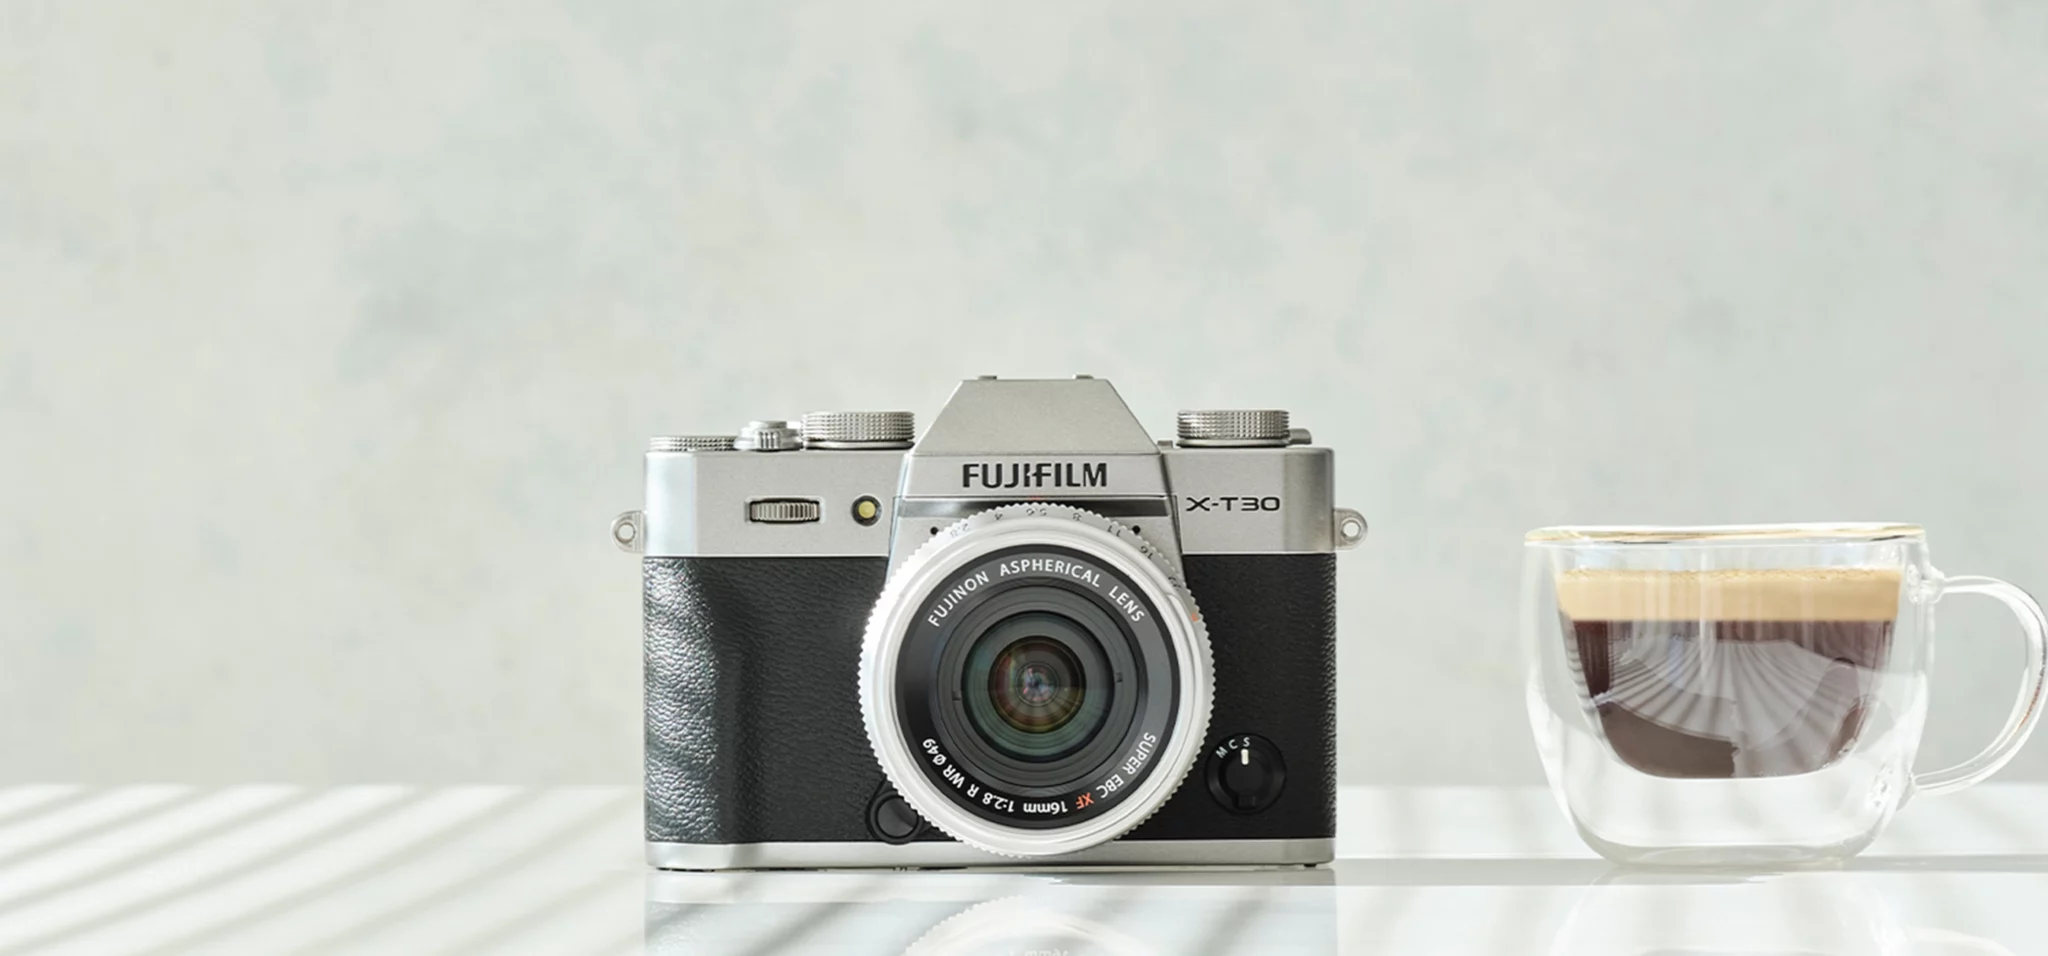 ▷ Fujifilm Una cámara con poder y portabilidad